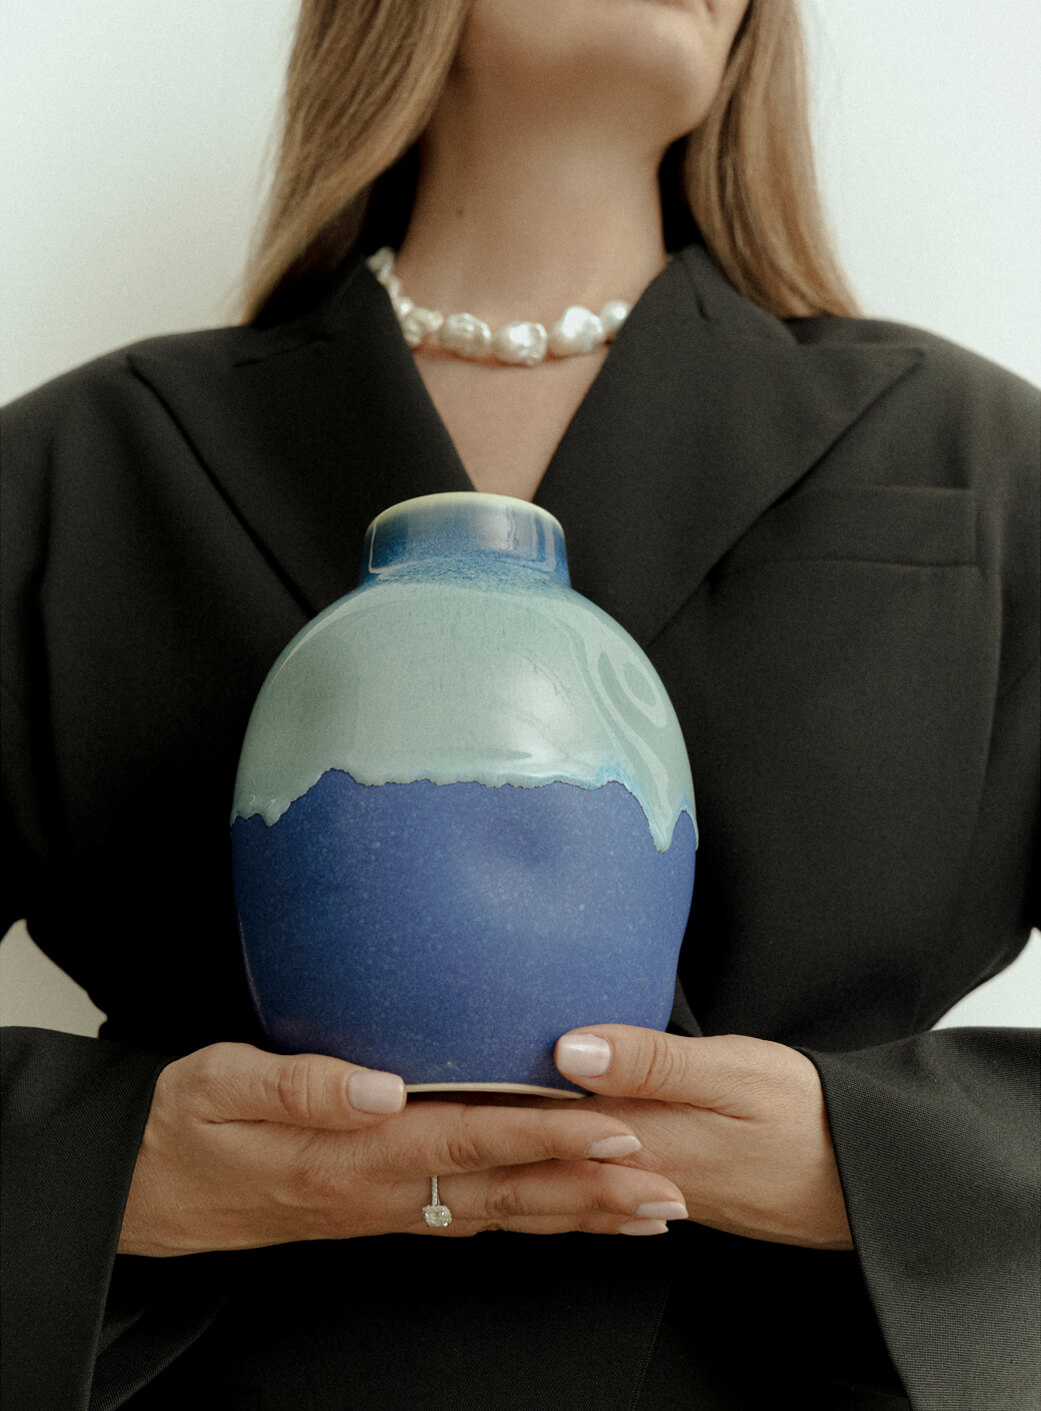 Жакет Erika Cavallini, ожерелье Ringstone, ваза Agami Ceramics.